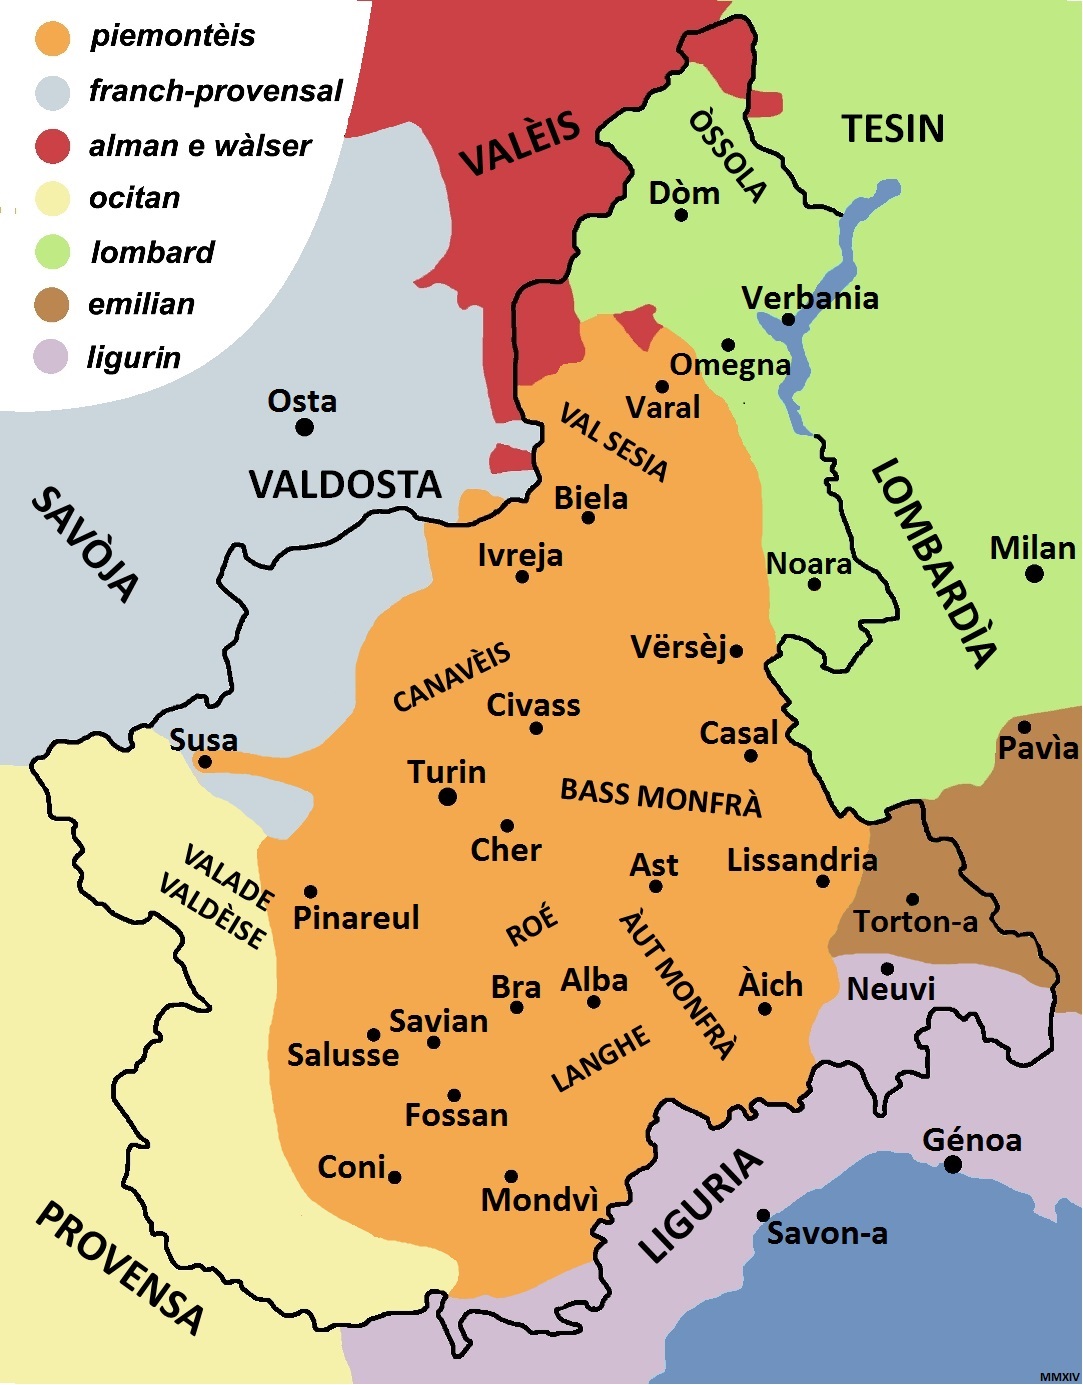 Linguistic Map of Piemontèis